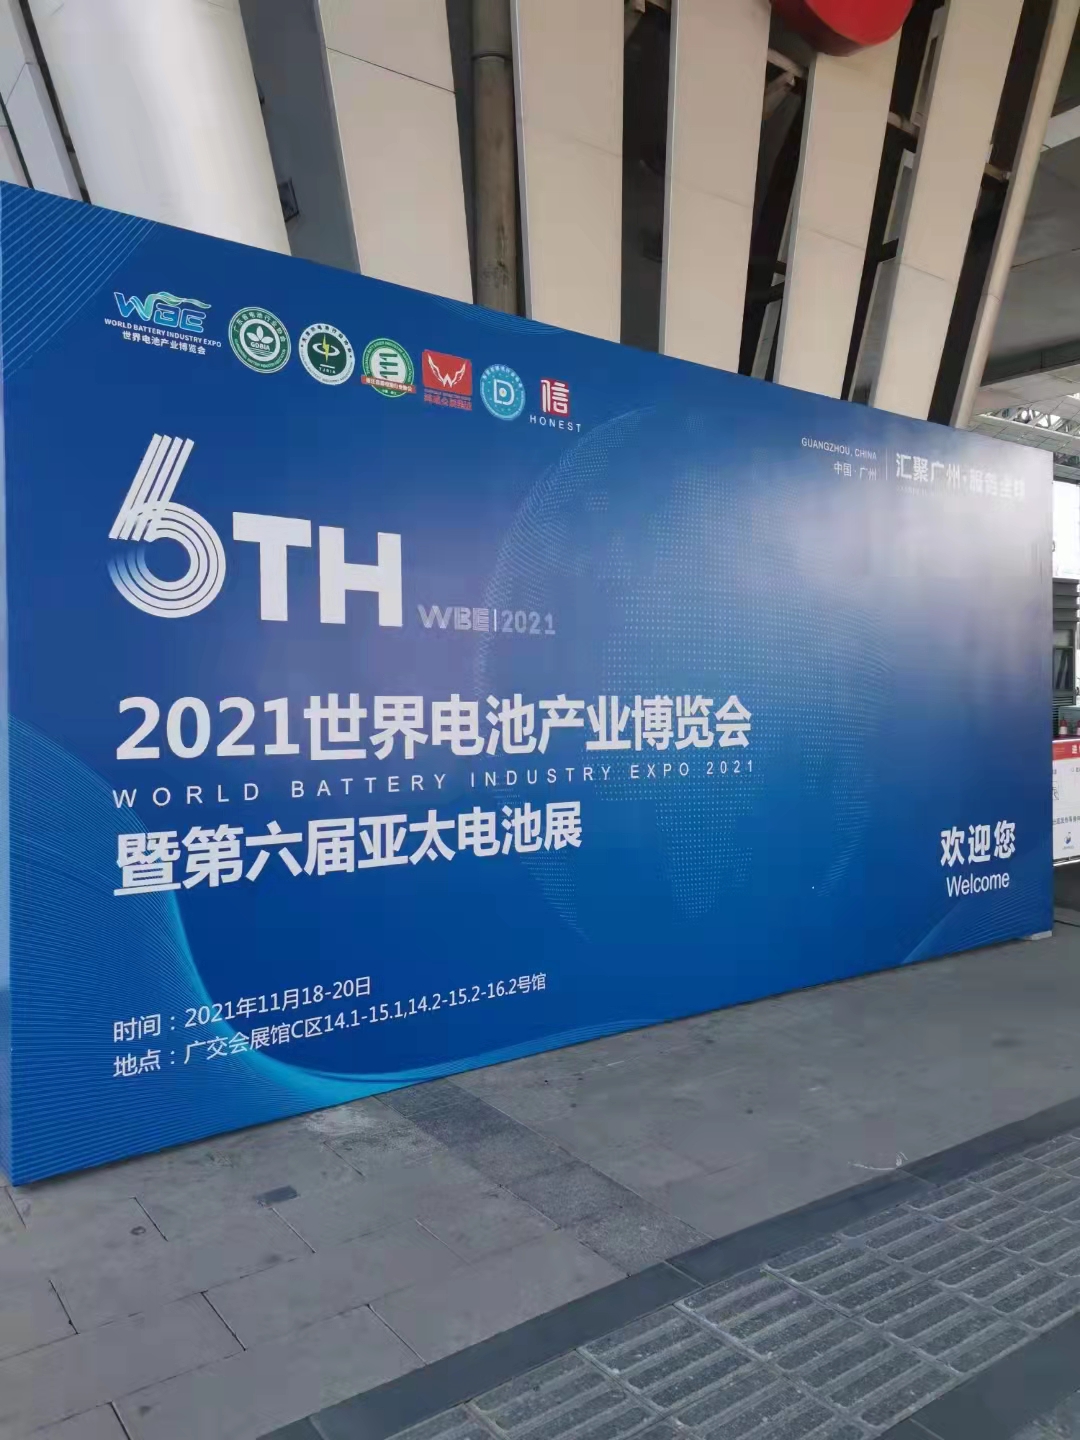 2021世界电池产业博览会盛大启幕